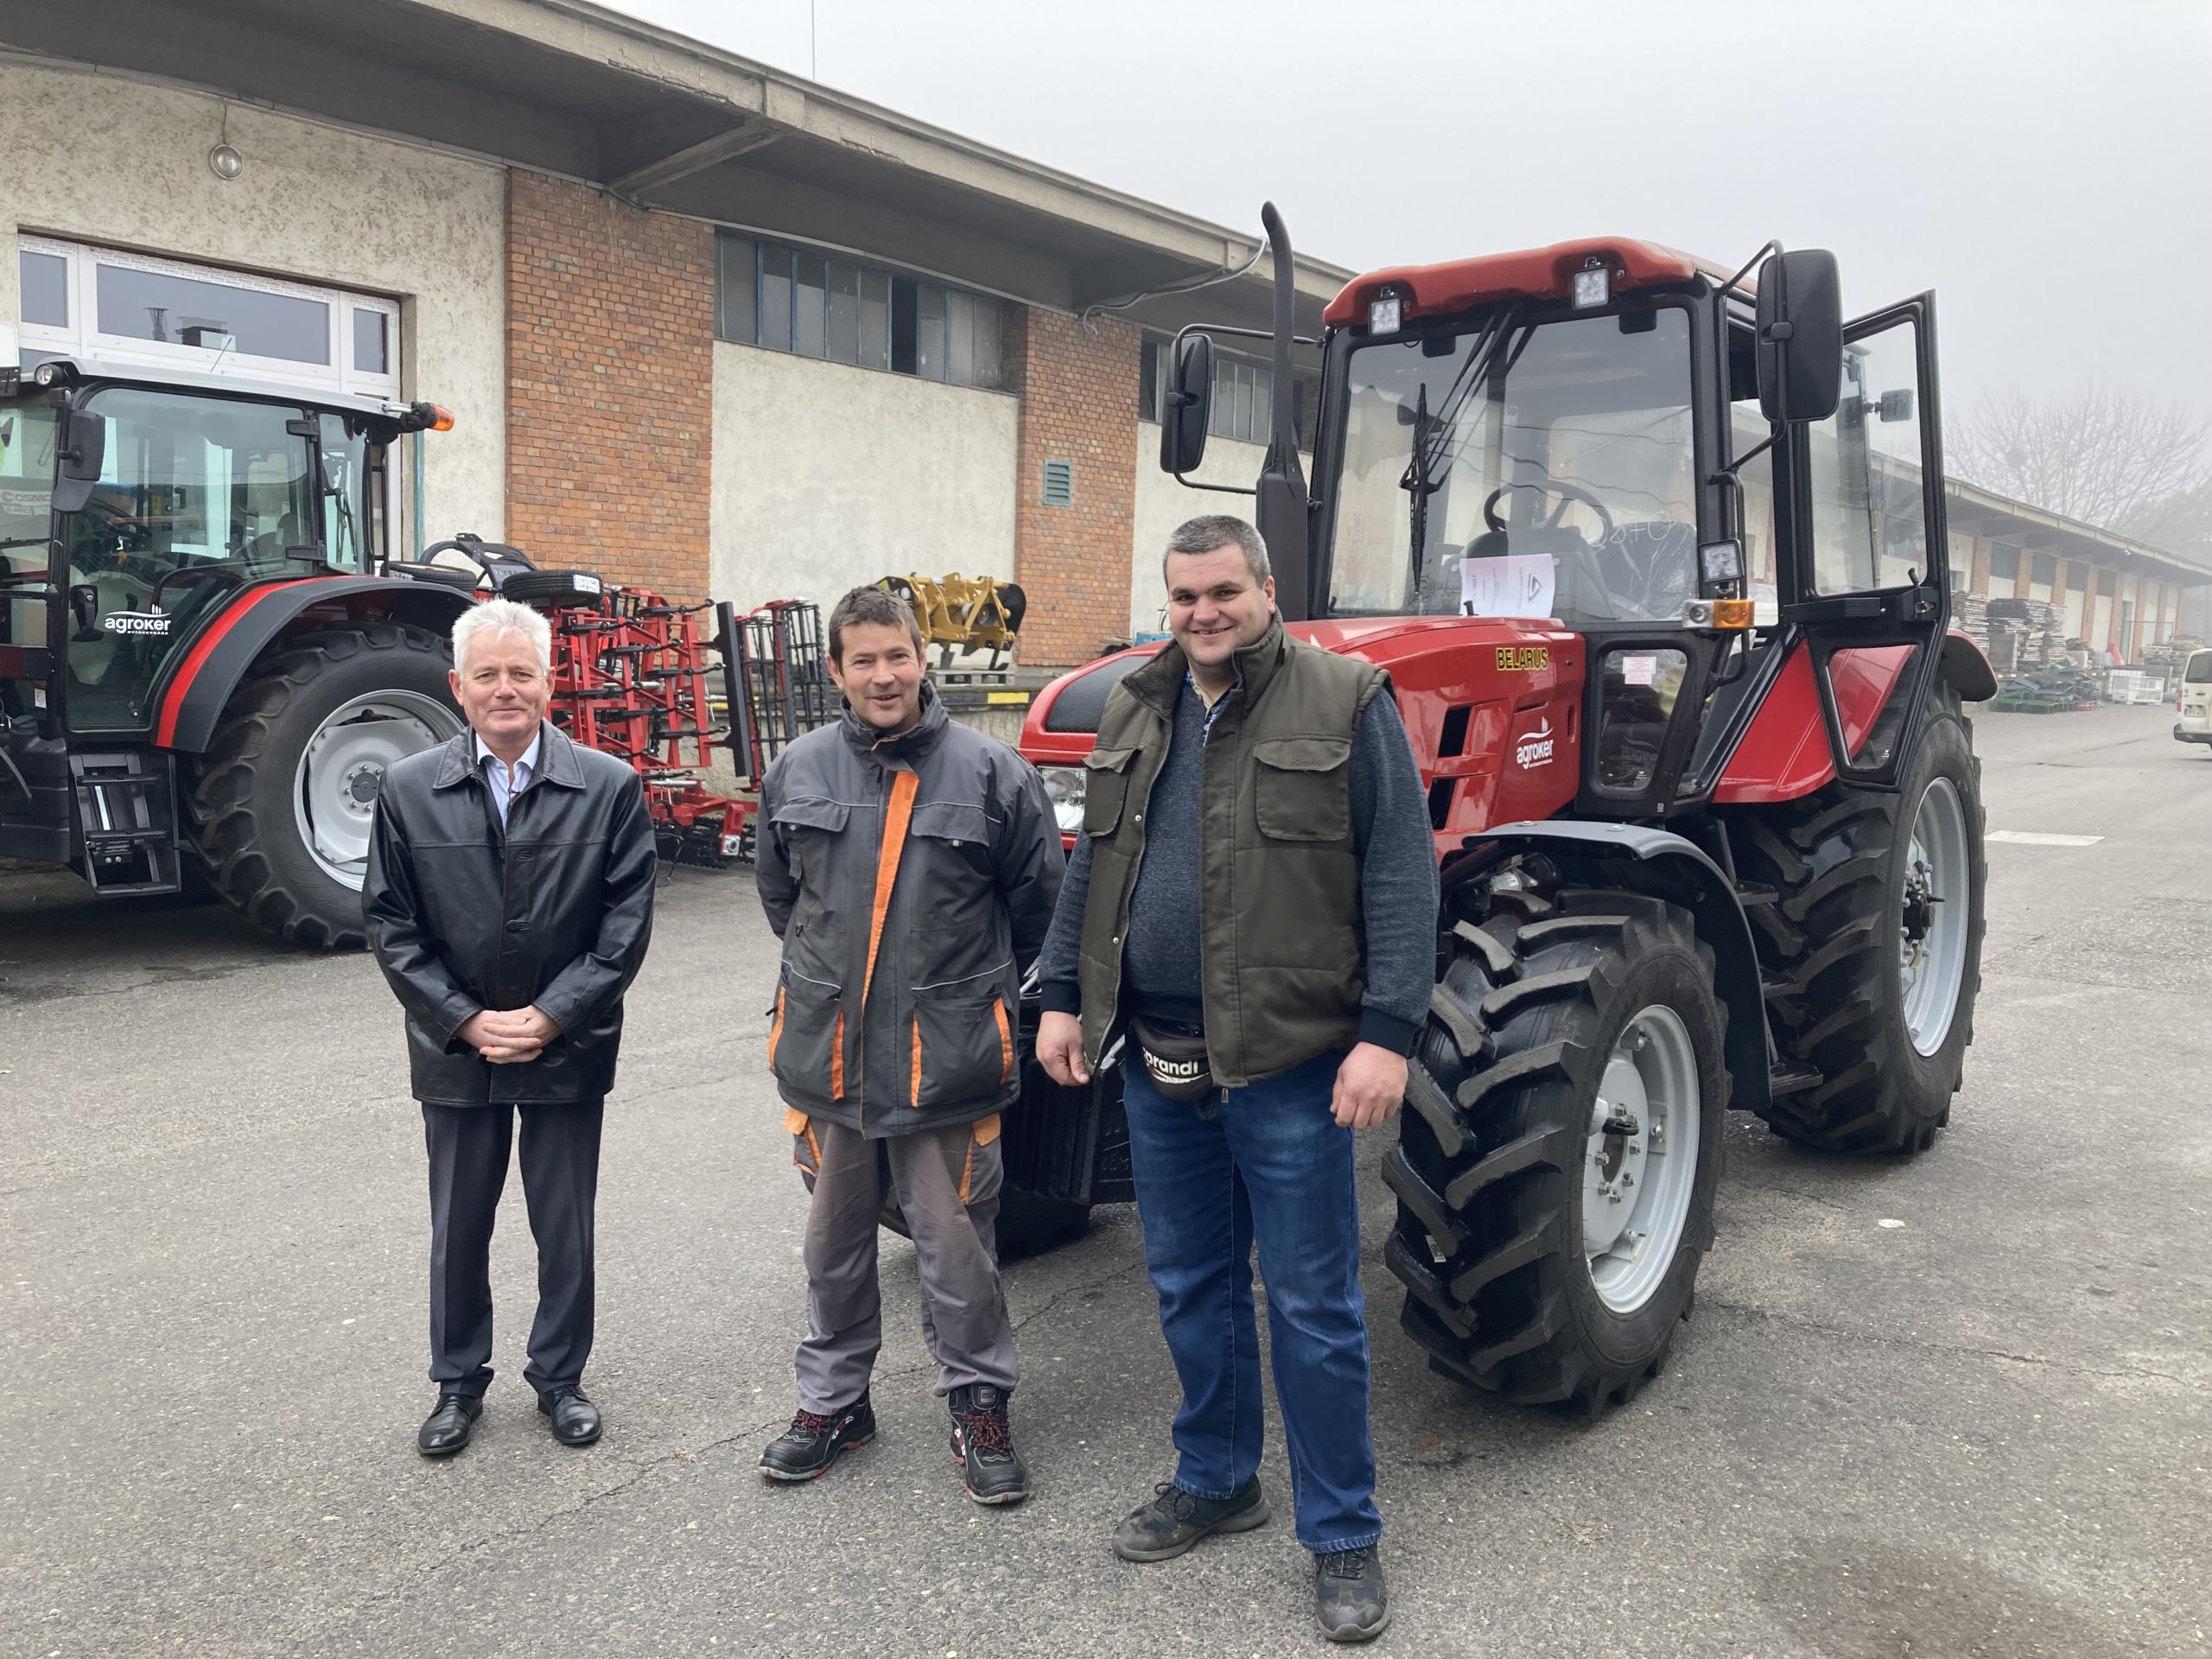 Három férfi állt egy piros traktor előtt, egy ipari épület mellett. A bal oldali férfi hivatalos öltözetben fekete kabátban, a középső munkáskabátban és nadrágban, a jobb oldali pedig mellényben és farmerben. Egy másik traktor látható a háttérben.